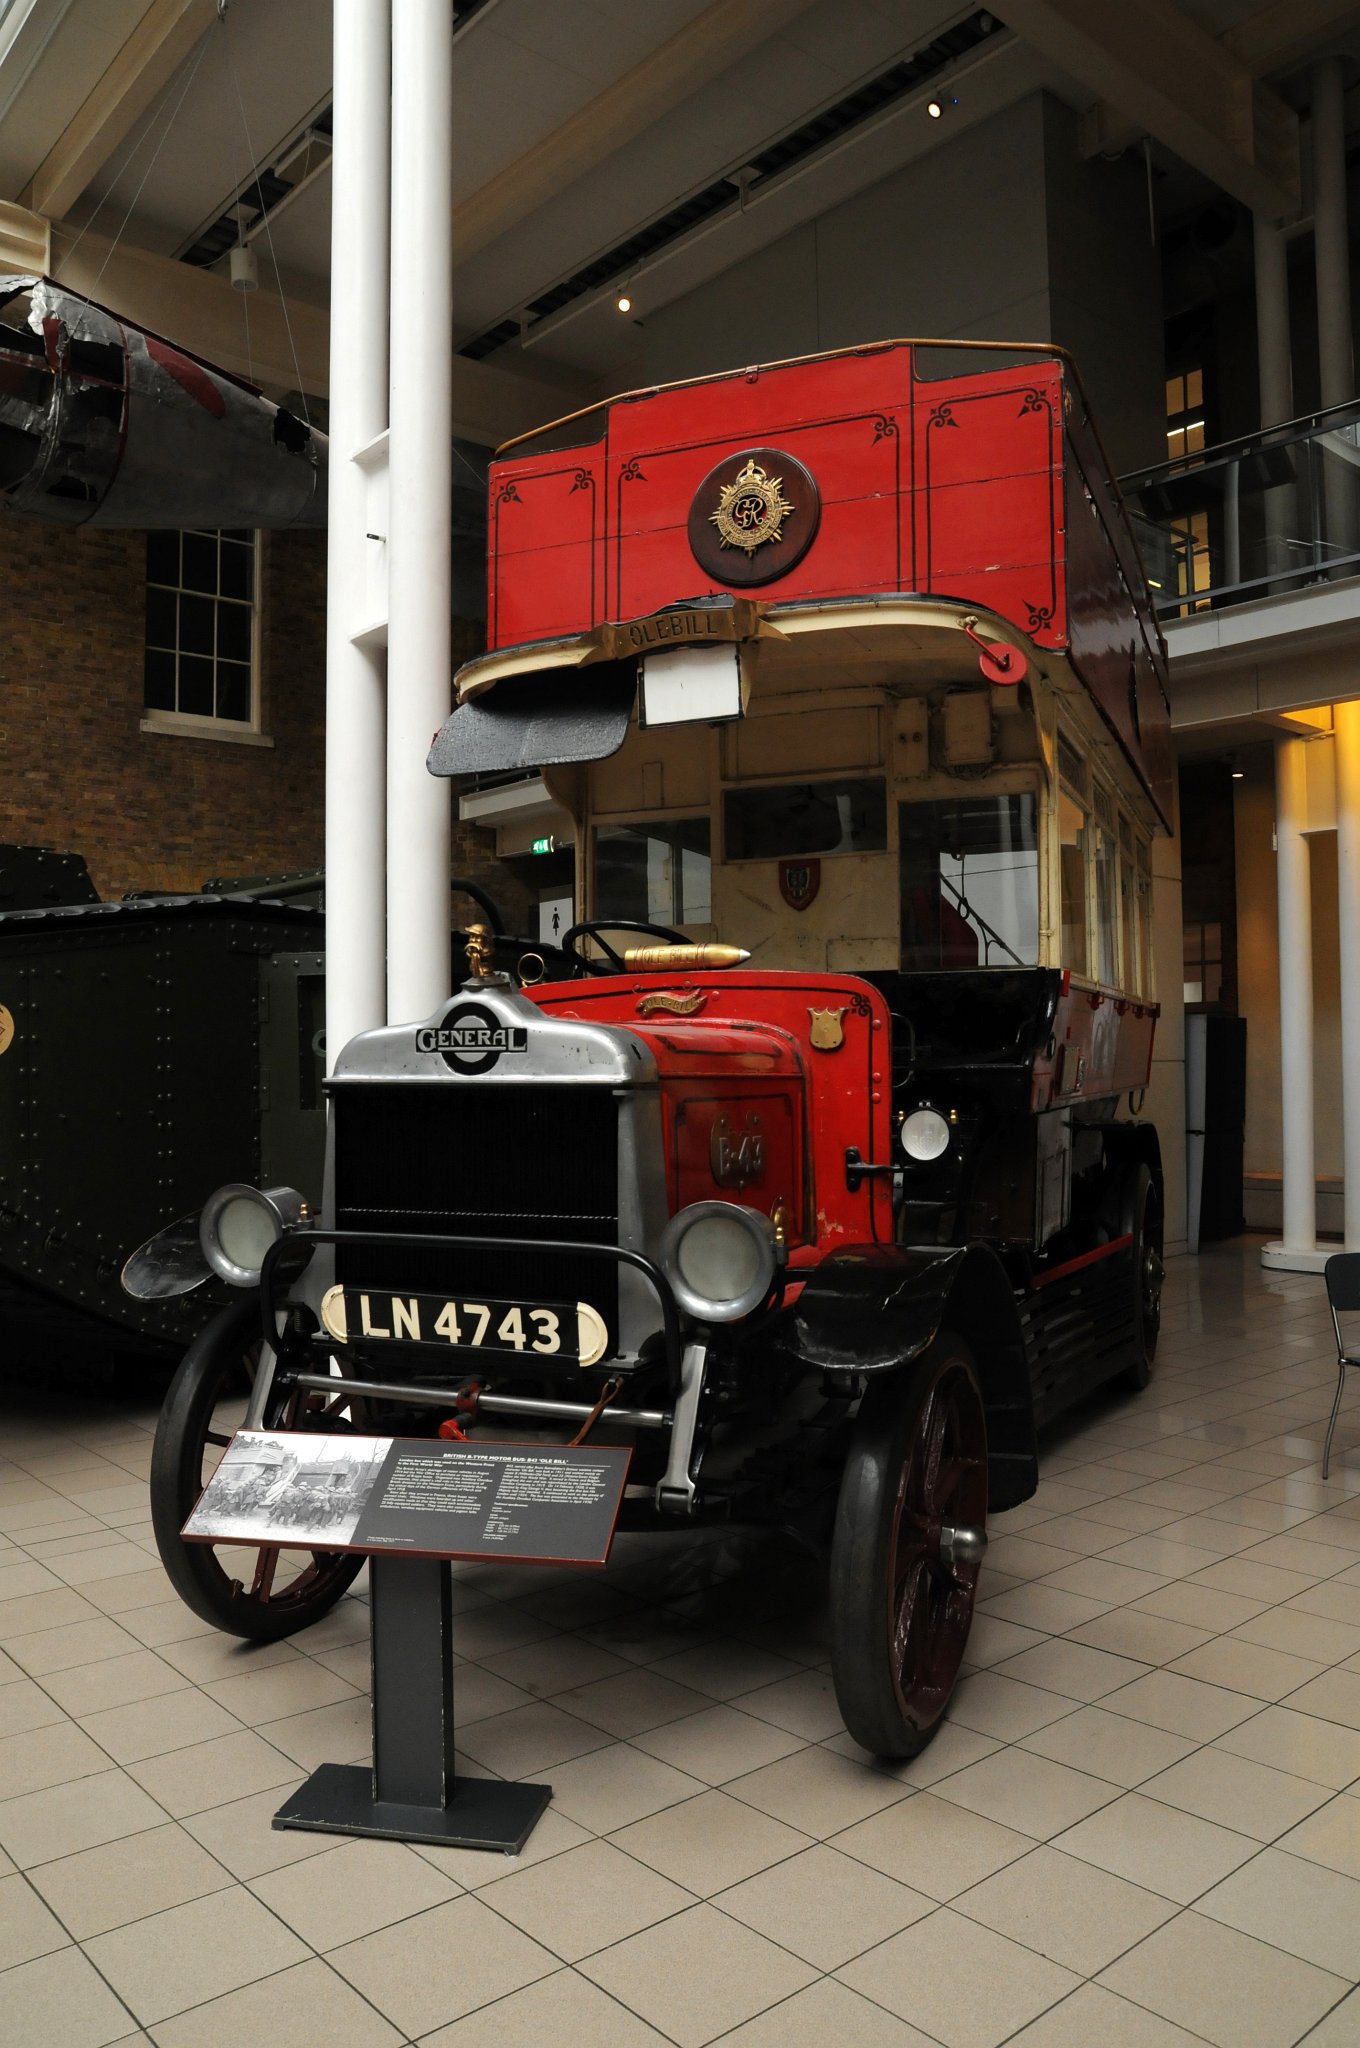 DSC_6840_1.jpg - Britský B-typ motorového autobusu: B43 ´Ole Bill´.Londýnský autobus, který byl použit na západní frontě v první světové válce.Ve britské armádě byl nedostatek motorových vozidel a to vedlo v srpnu 1914 ministerstvo války k tomu, aby koupilo nebo zabavilo řadu B-typu autobusů. B43 autobus nazývaný Ole Bill  jezdil dříve na lince 8 a 25. Byl vyroben v roce 1911 a dosahoval maximální rychlosti 32km/ hod.